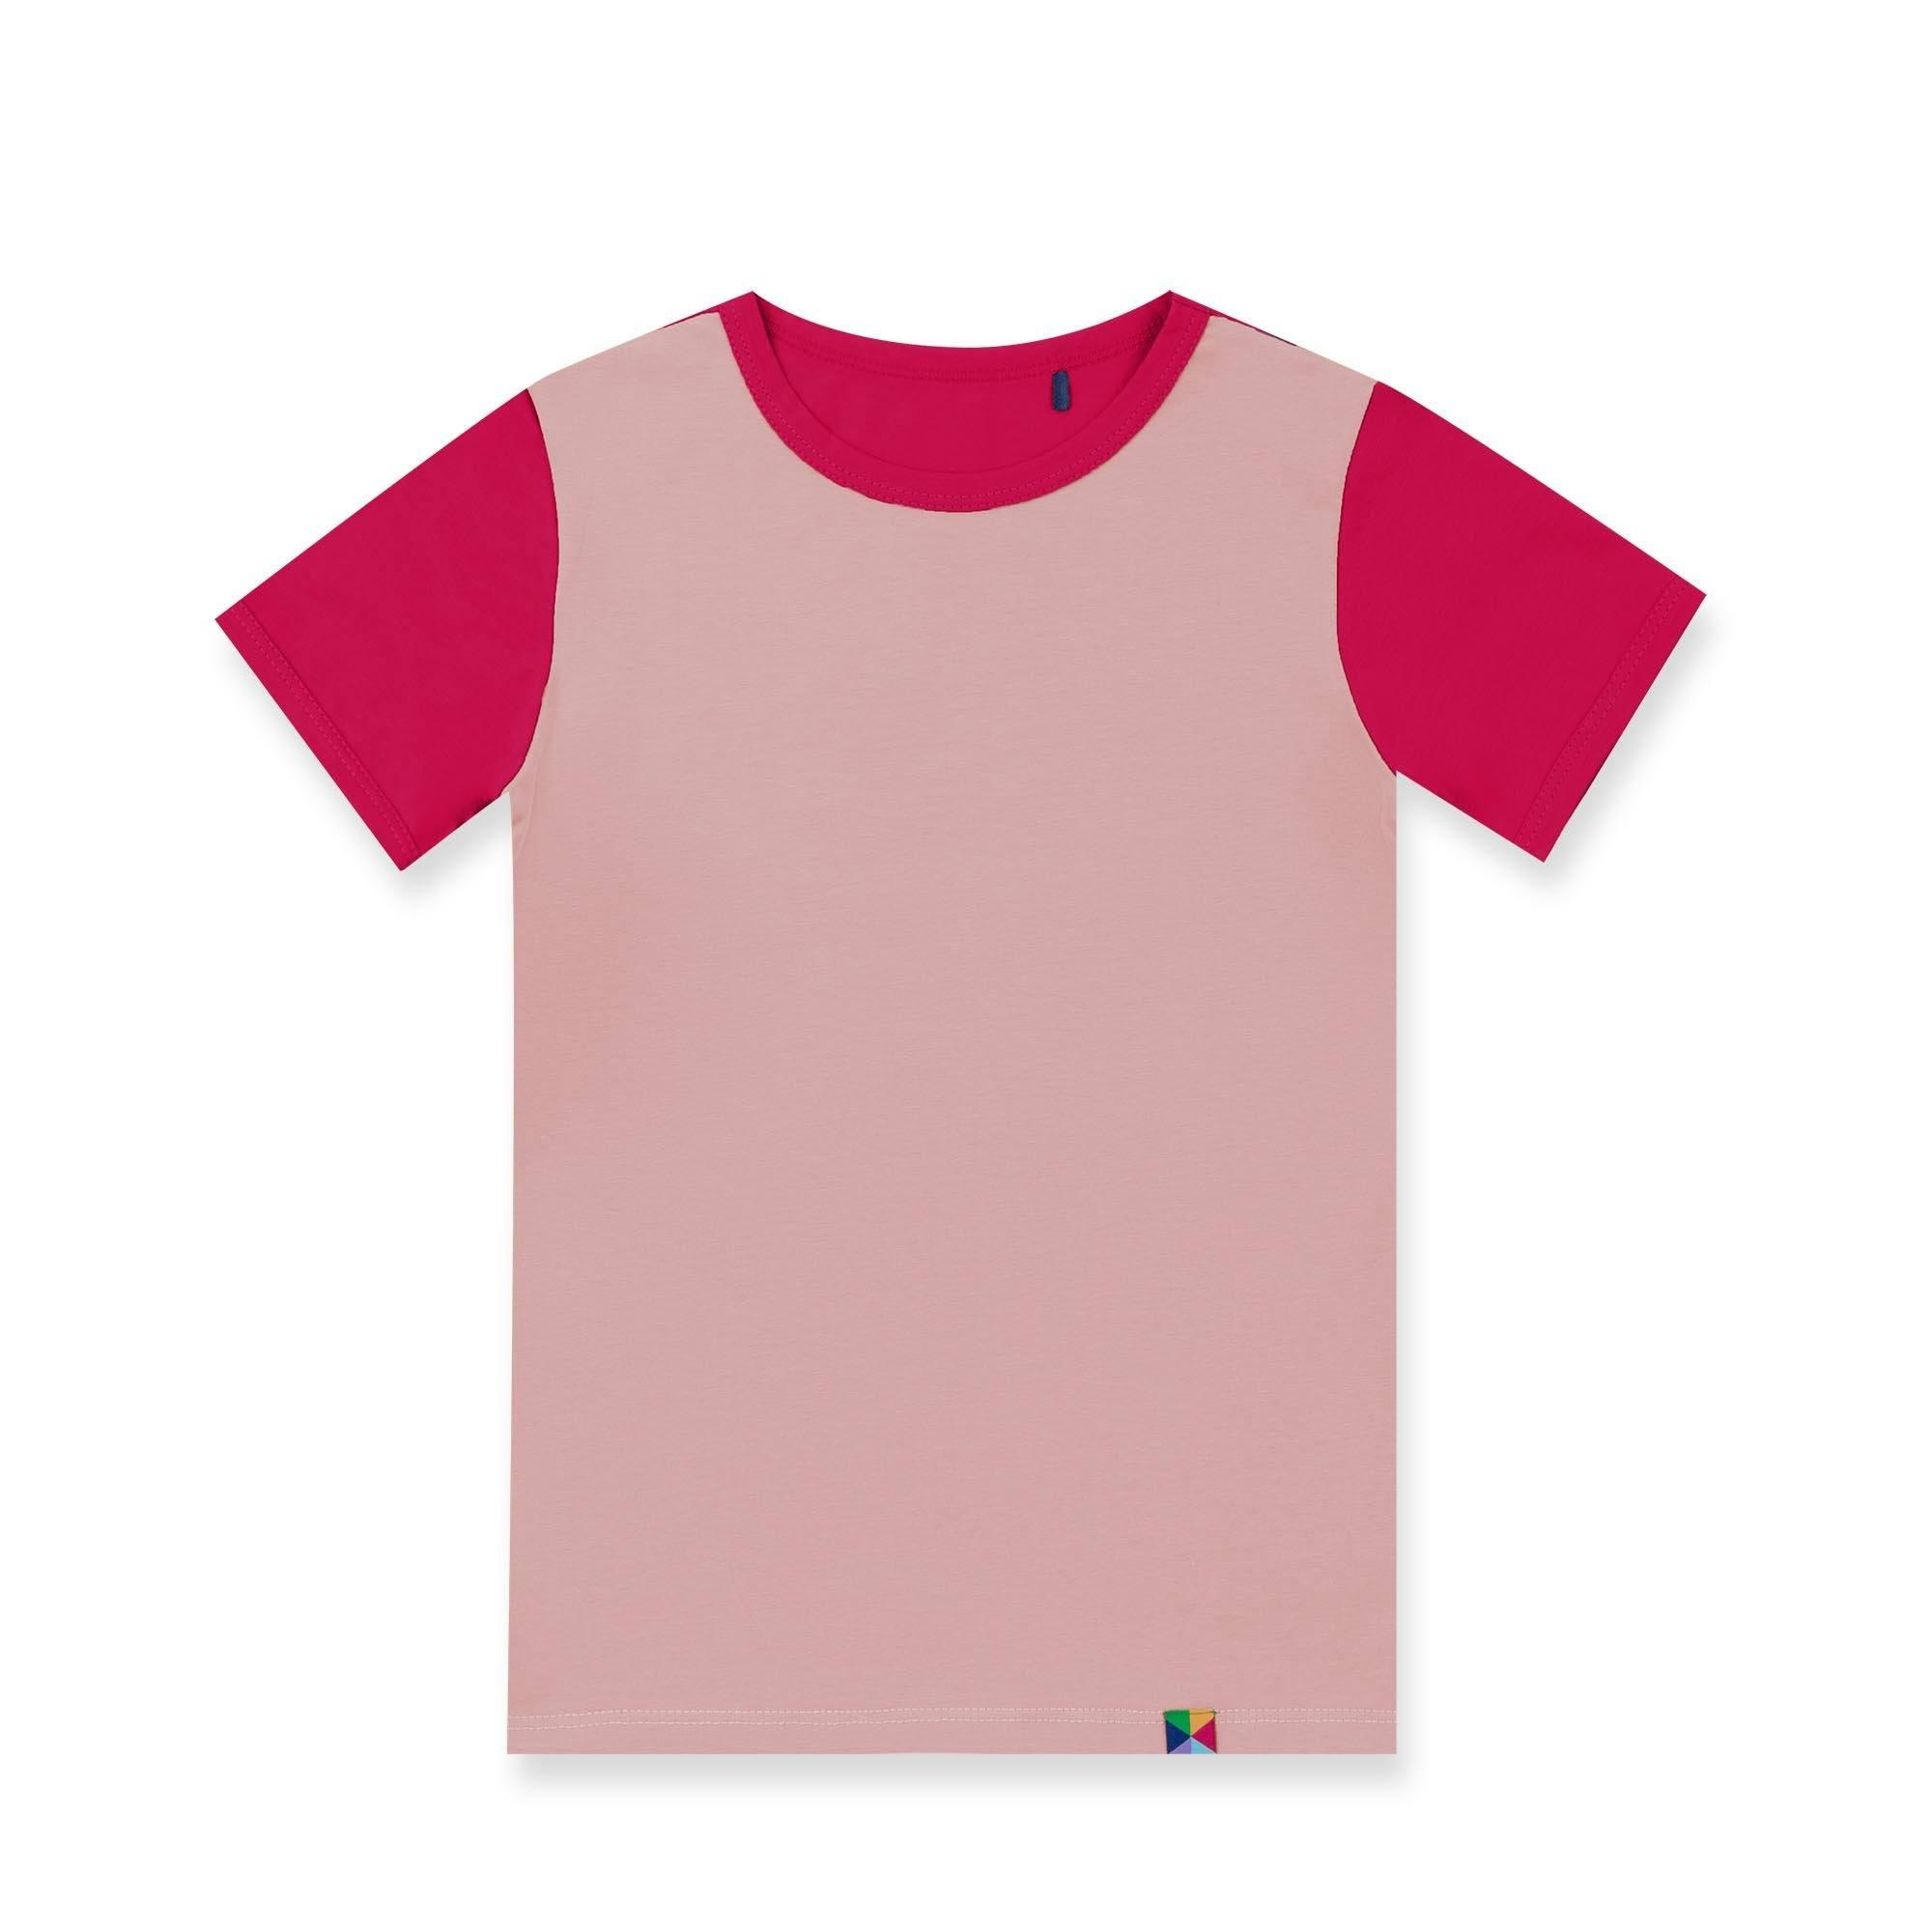 Pudroworóżowo-różowa koszulka dwukolorowa Junior